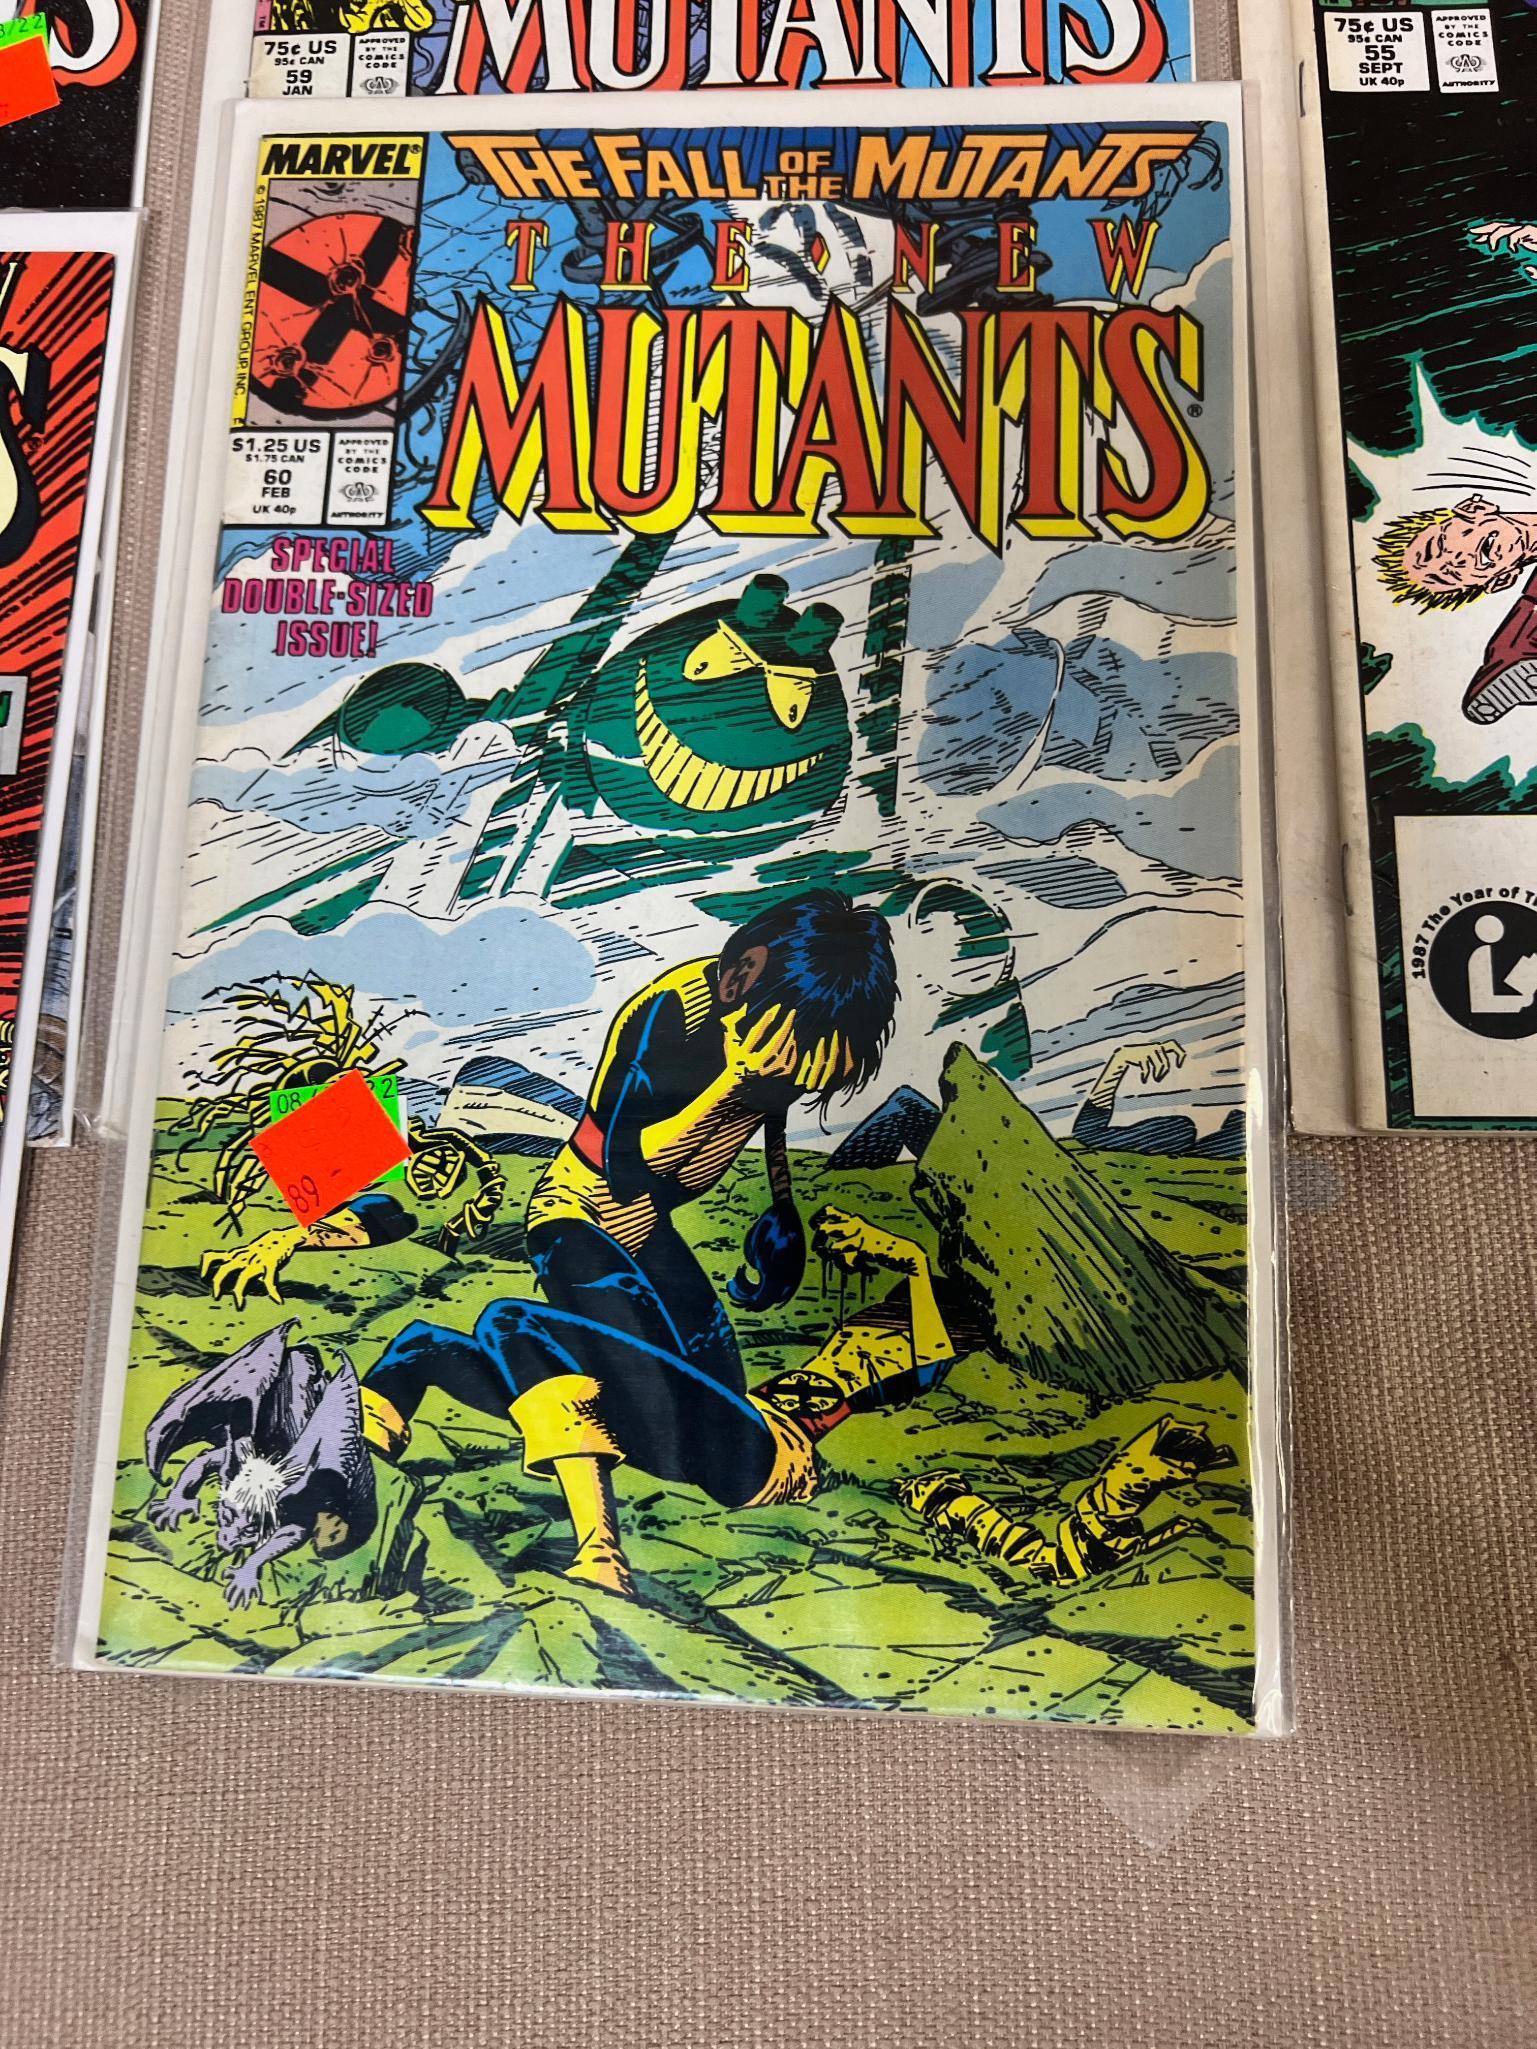 15- The New Mutants Comic Books, issues 51-65